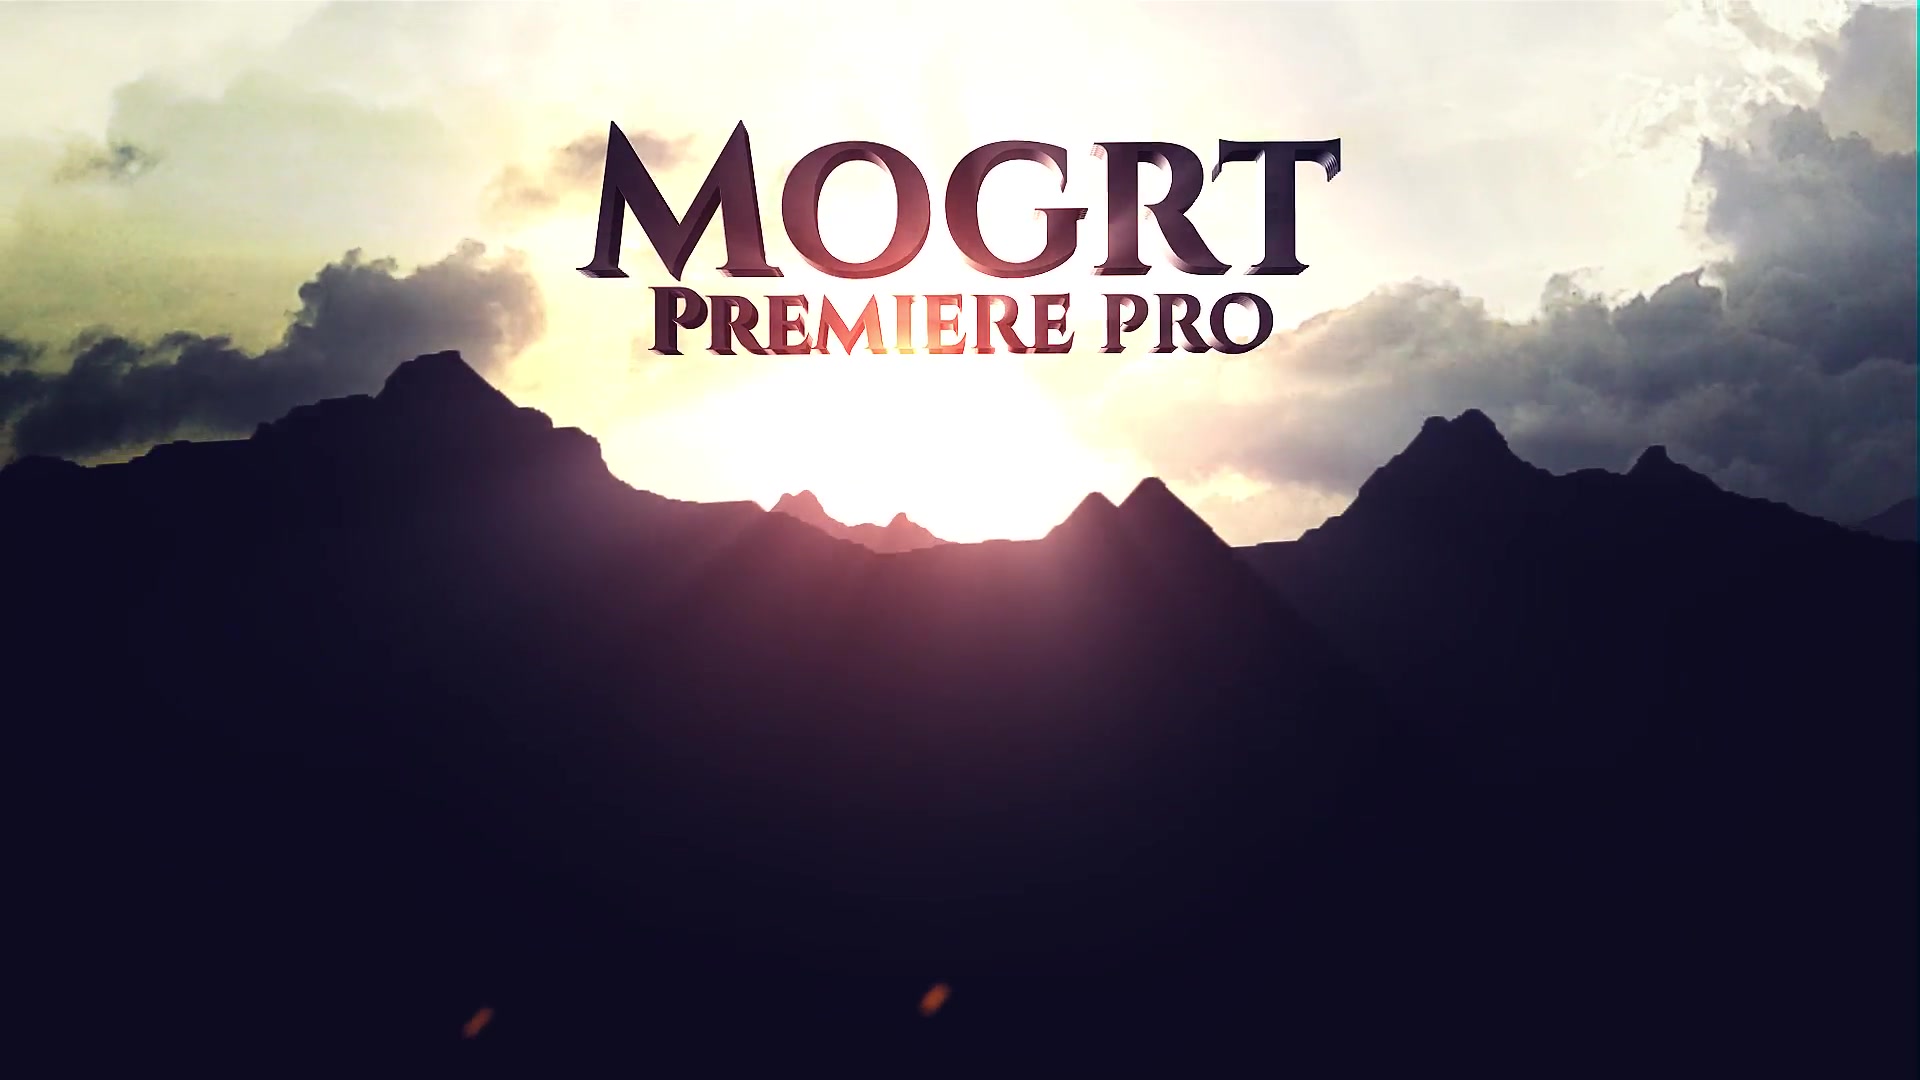 Mountain Title Videohive 22847356 Premiere Pro Image 4